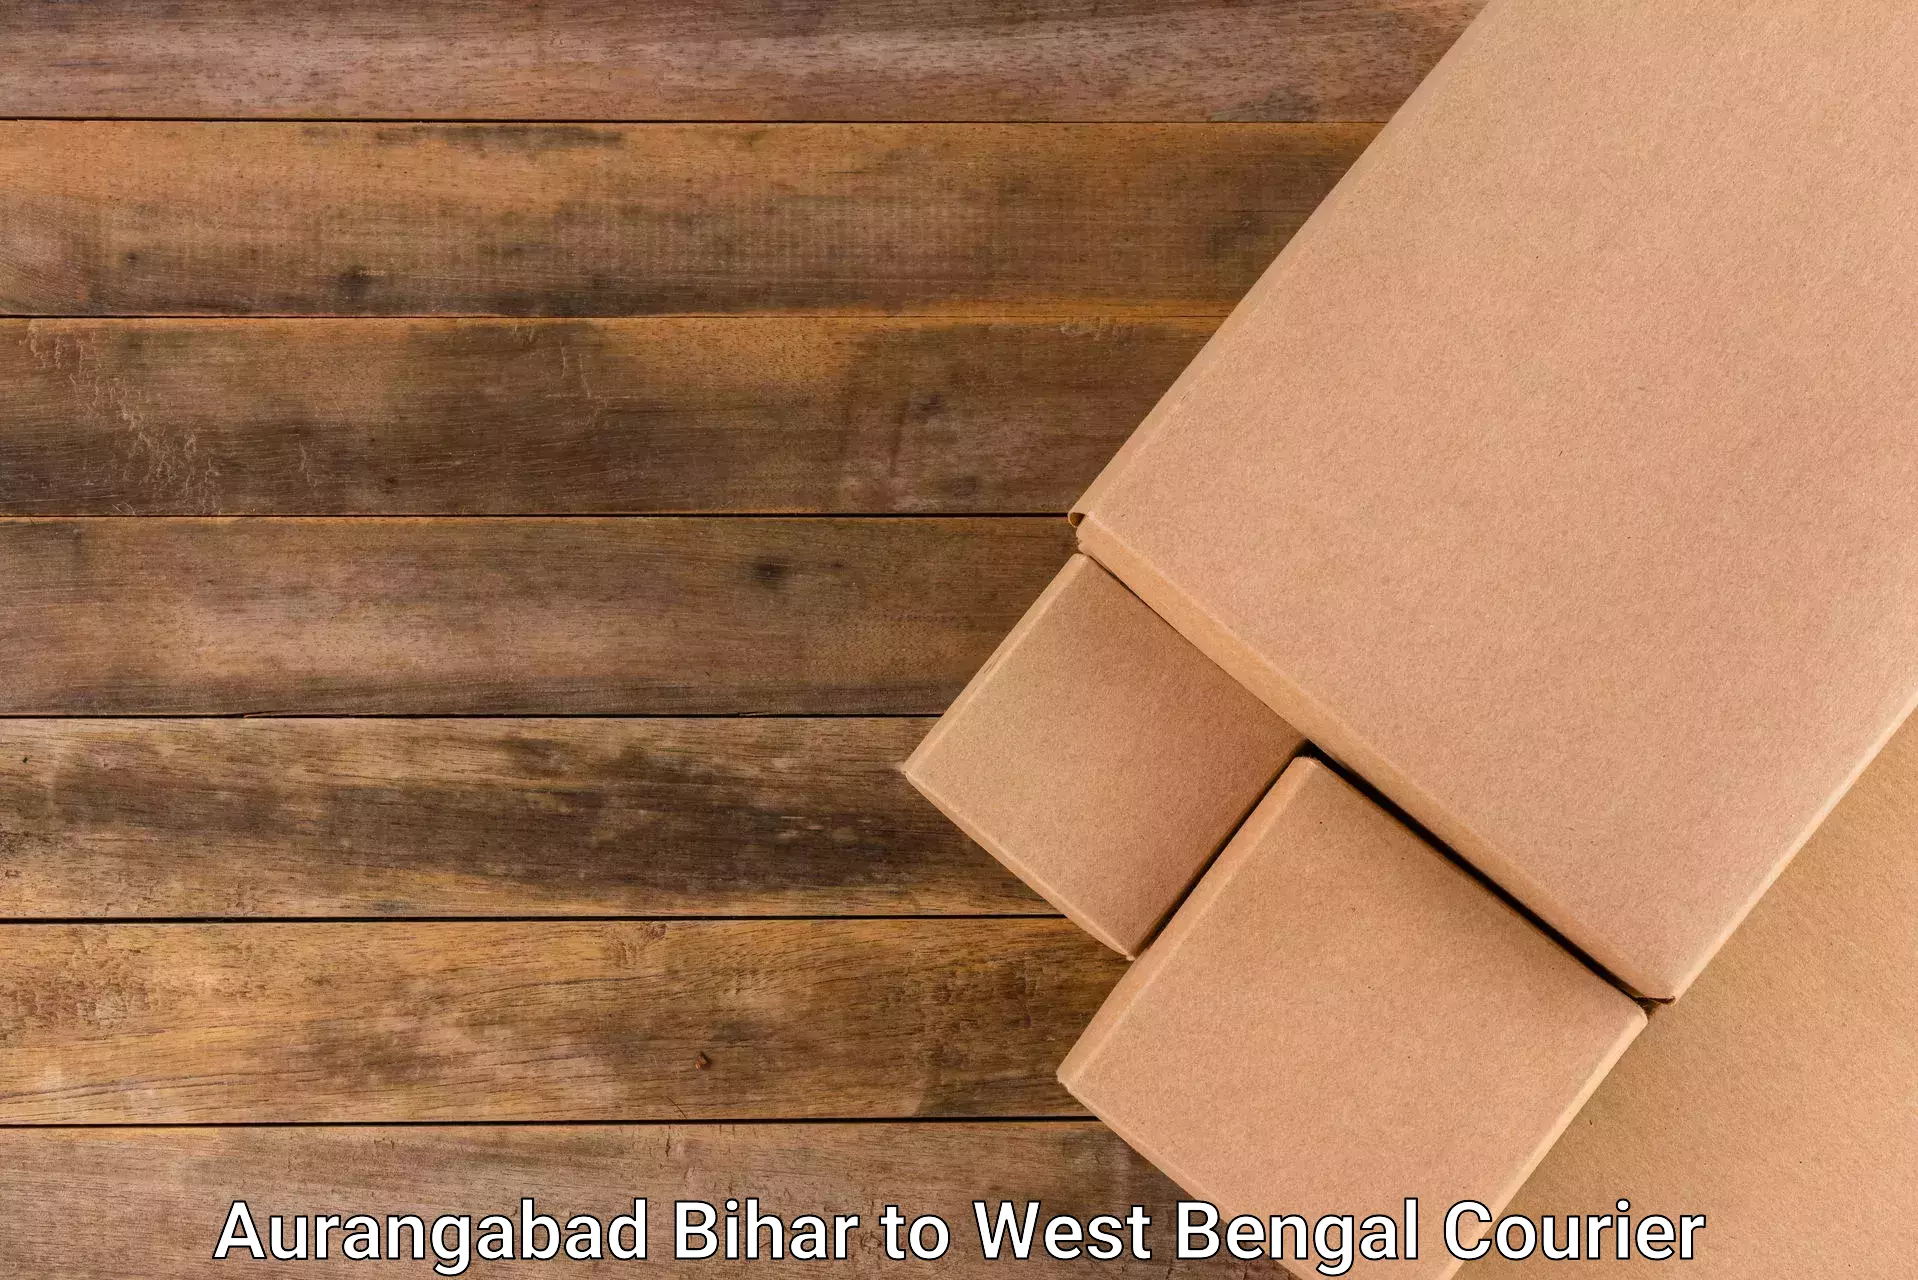 Large package courier Aurangabad Bihar to Sonamukhi